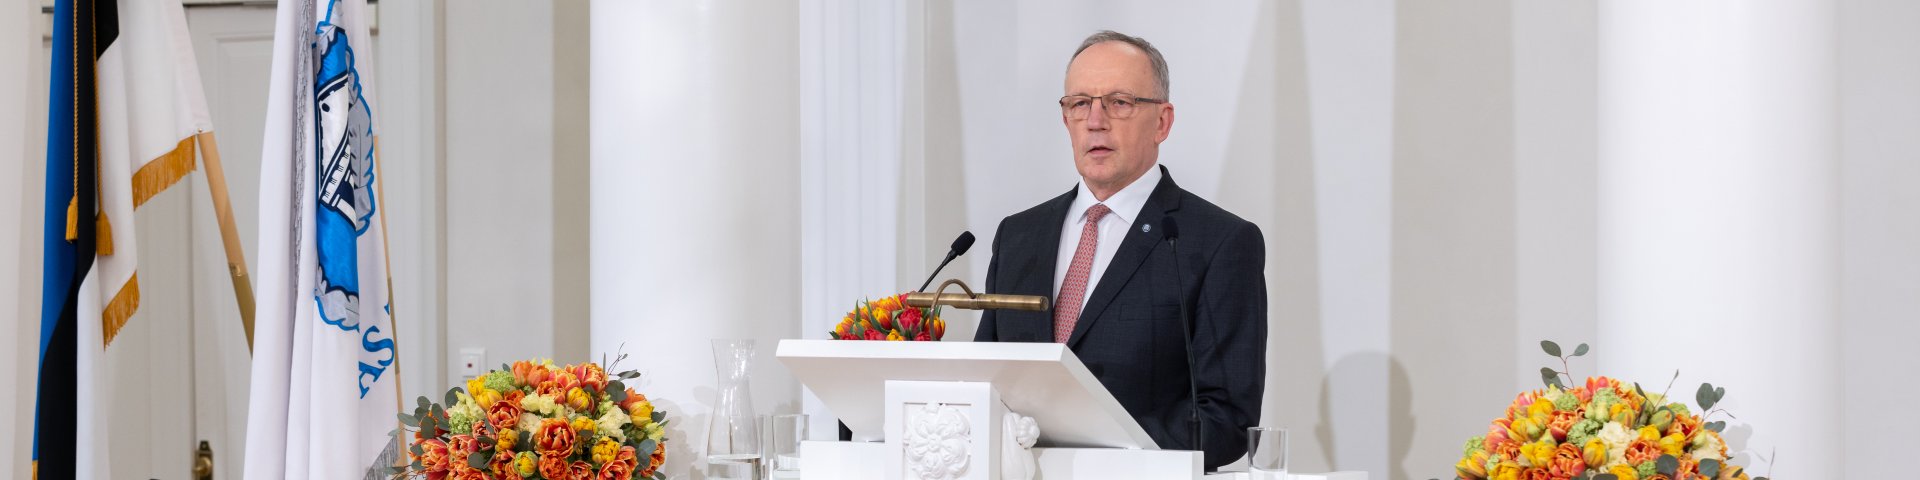 Tartu Ülikooli rektor Toomas Asser kõnepuldis